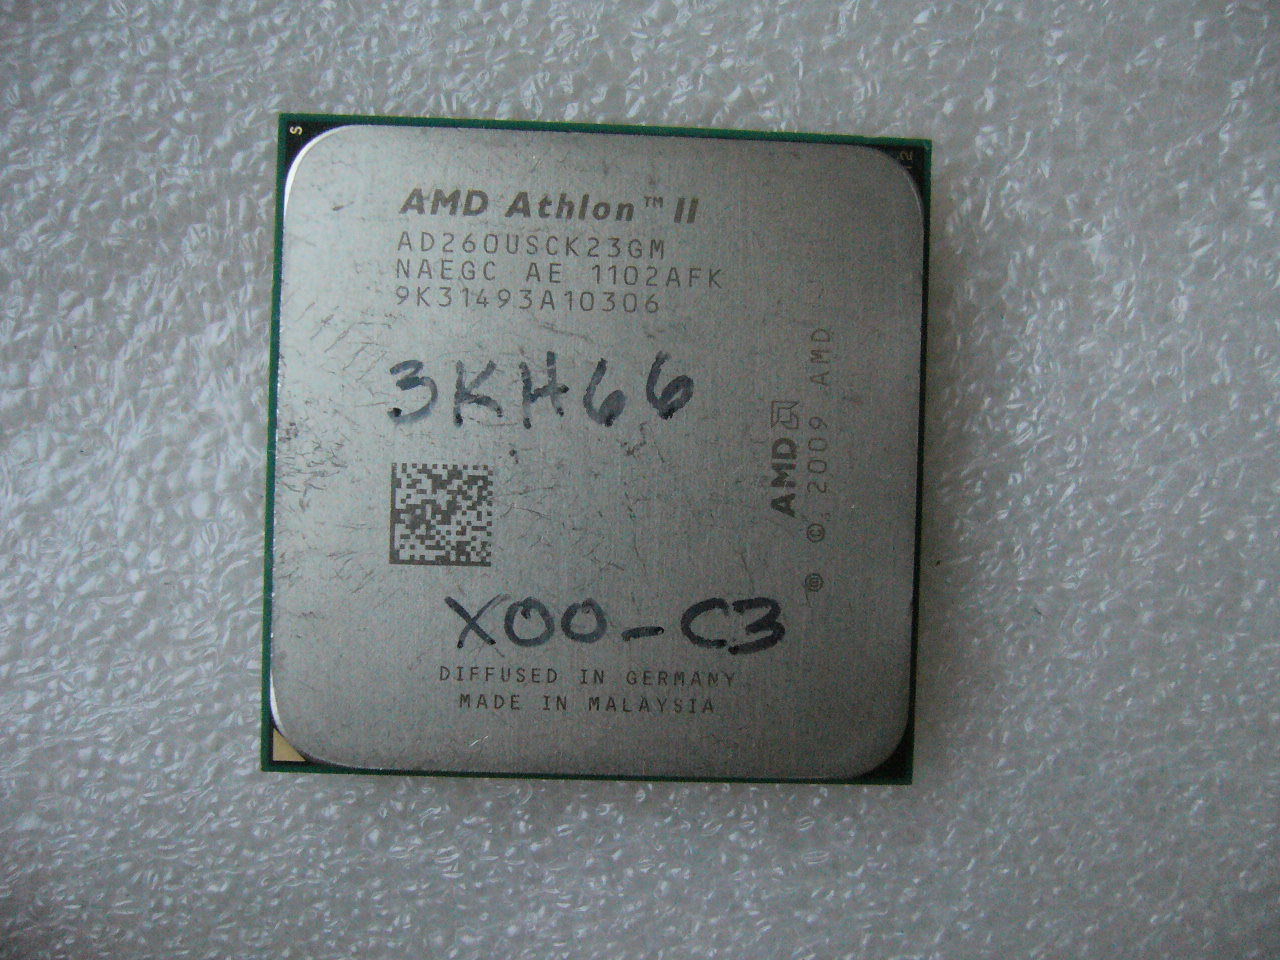 QTY 1x AMD Athlon II X2 260u 1.8 GHz Dual-Core (AD260USCK23GM) CPU AM3 25W